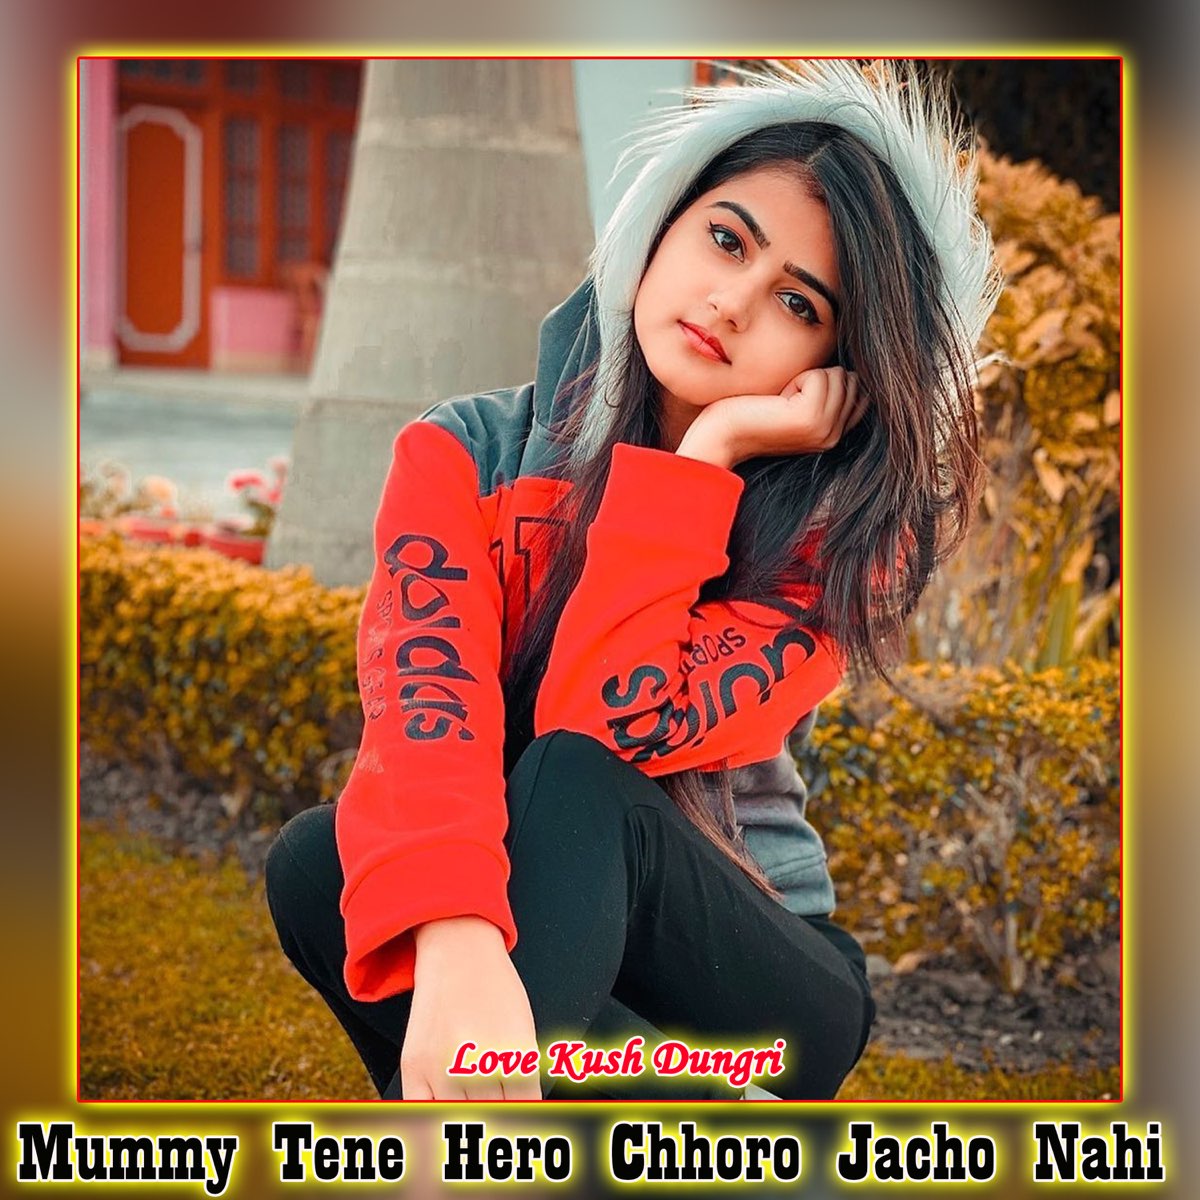 Mummy Tene Hero Chhoro Jacho Nahi - Single by Love Kush Dungri on Apple  Music